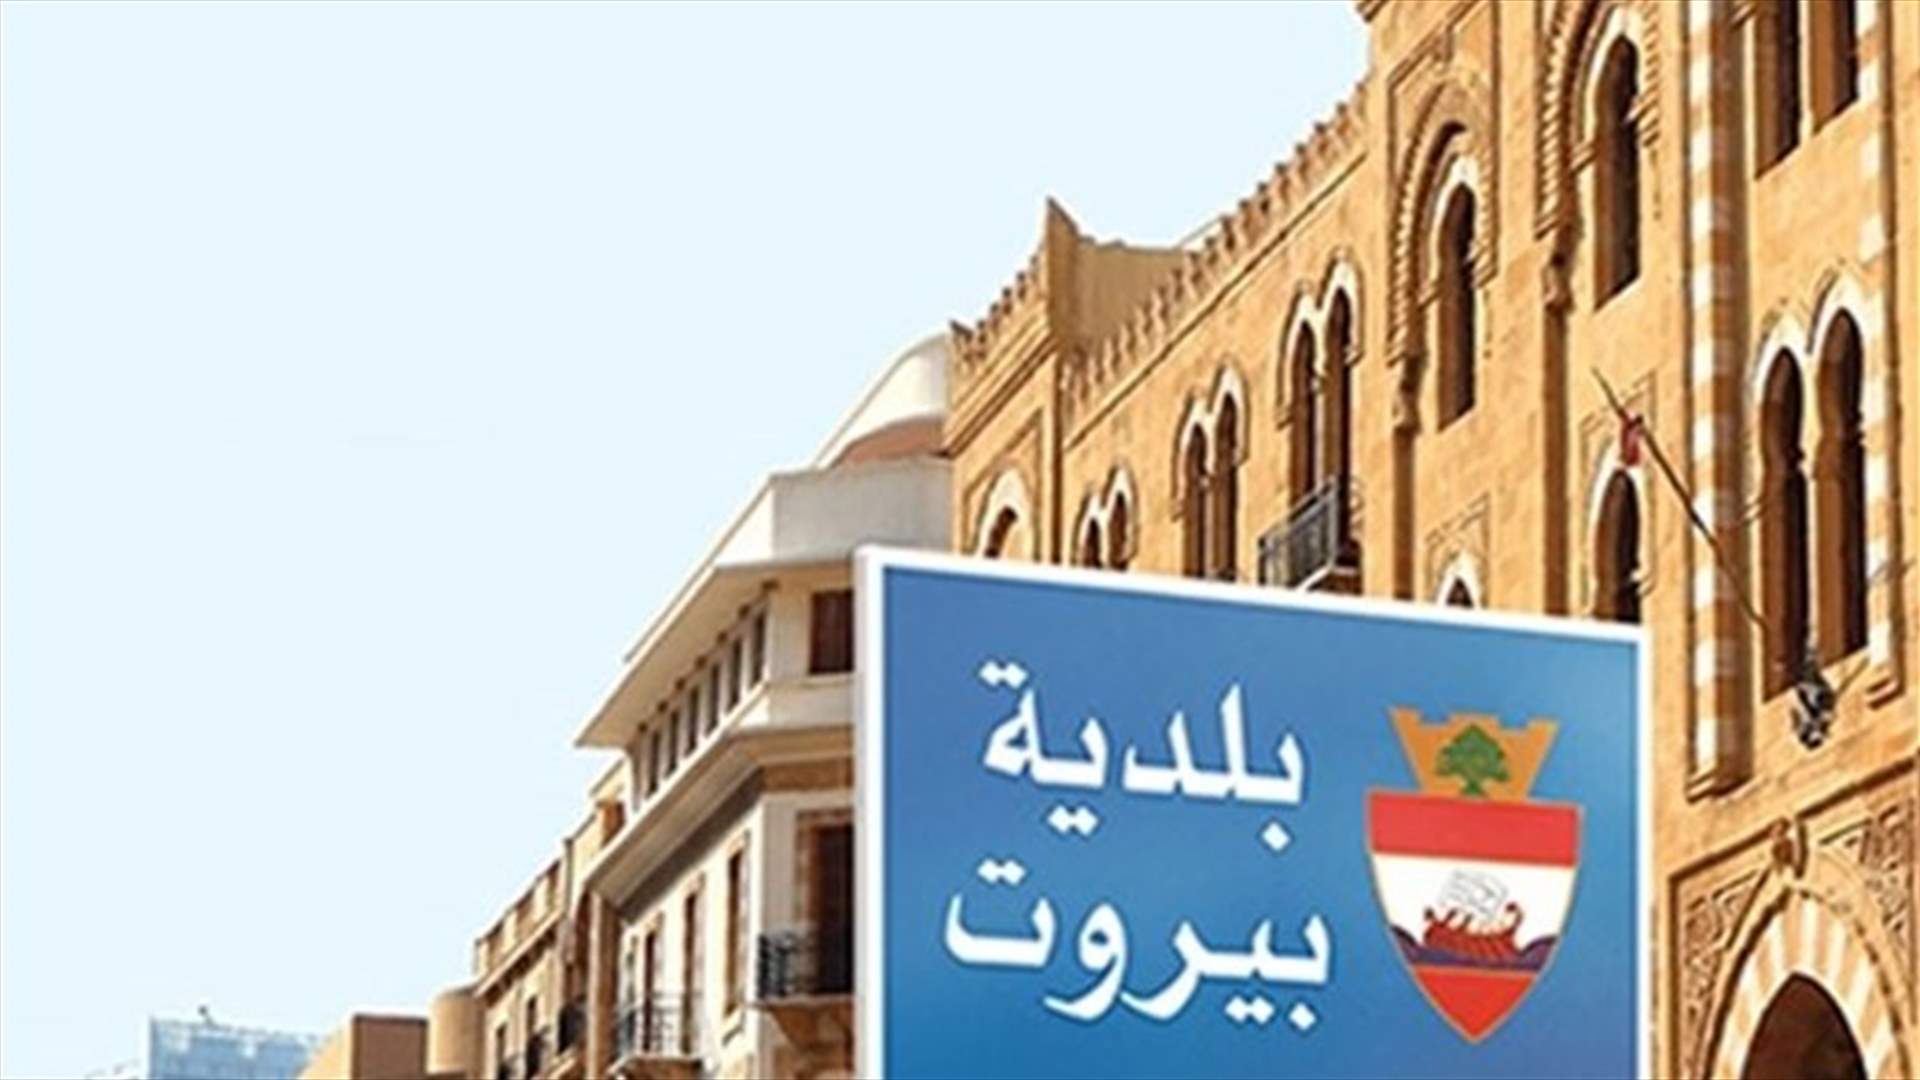 إحالة ملف التلزيمات العامة في بلدية بيروت الى النيابة العامة لدى ديوان المحاسبة